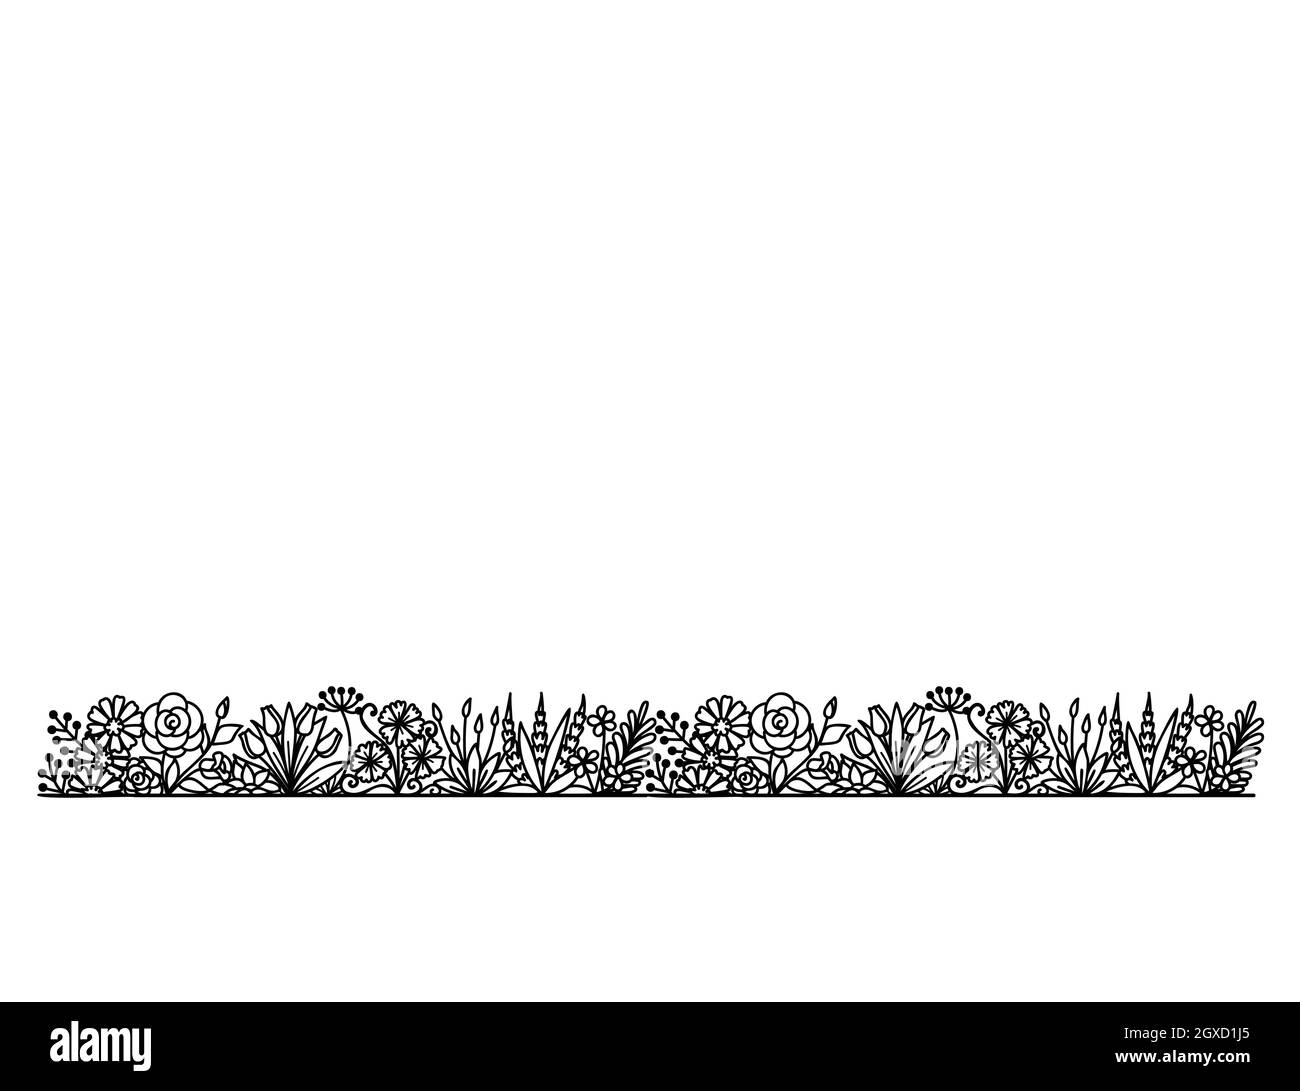 Ligne de fleurs répétable, silhouette noire de jardin floral sur fond blanc pour l'impression, la gravure ou la coloration. Illustration vectorielle. Illustration de Vecteur